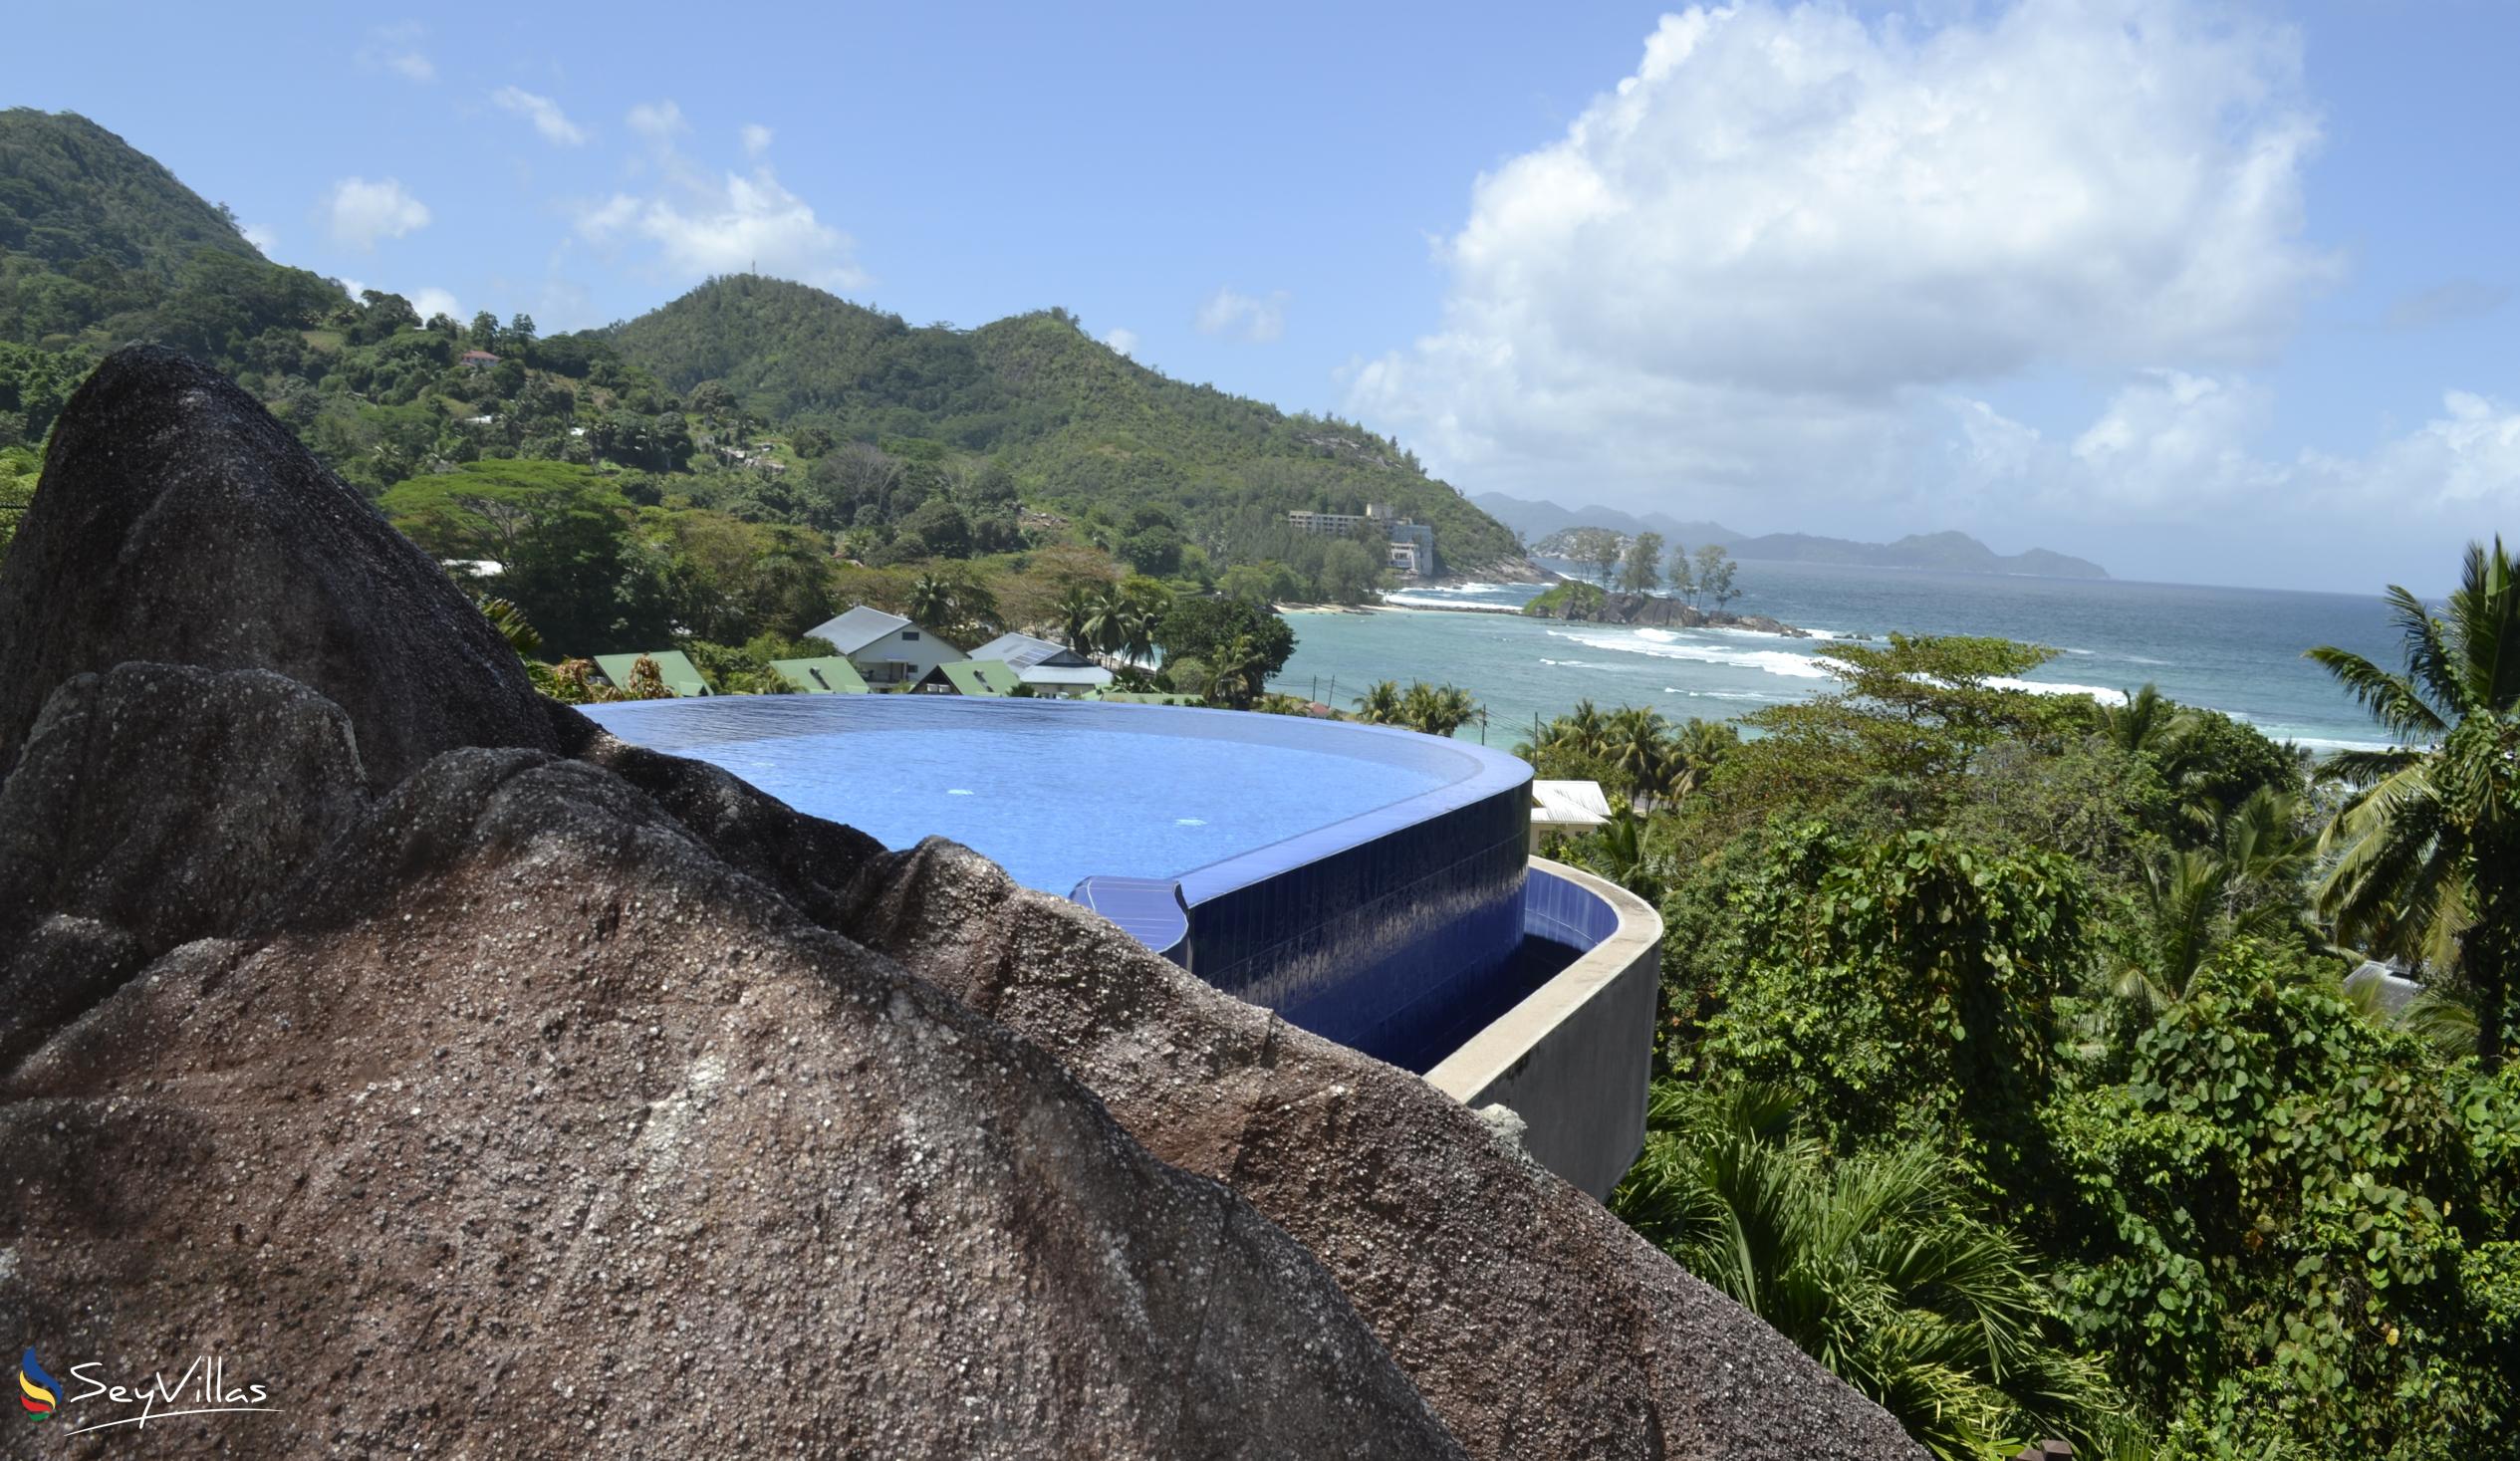 Foto 5: Villas de Jardin - Aussenbereich - Mahé (Seychellen)